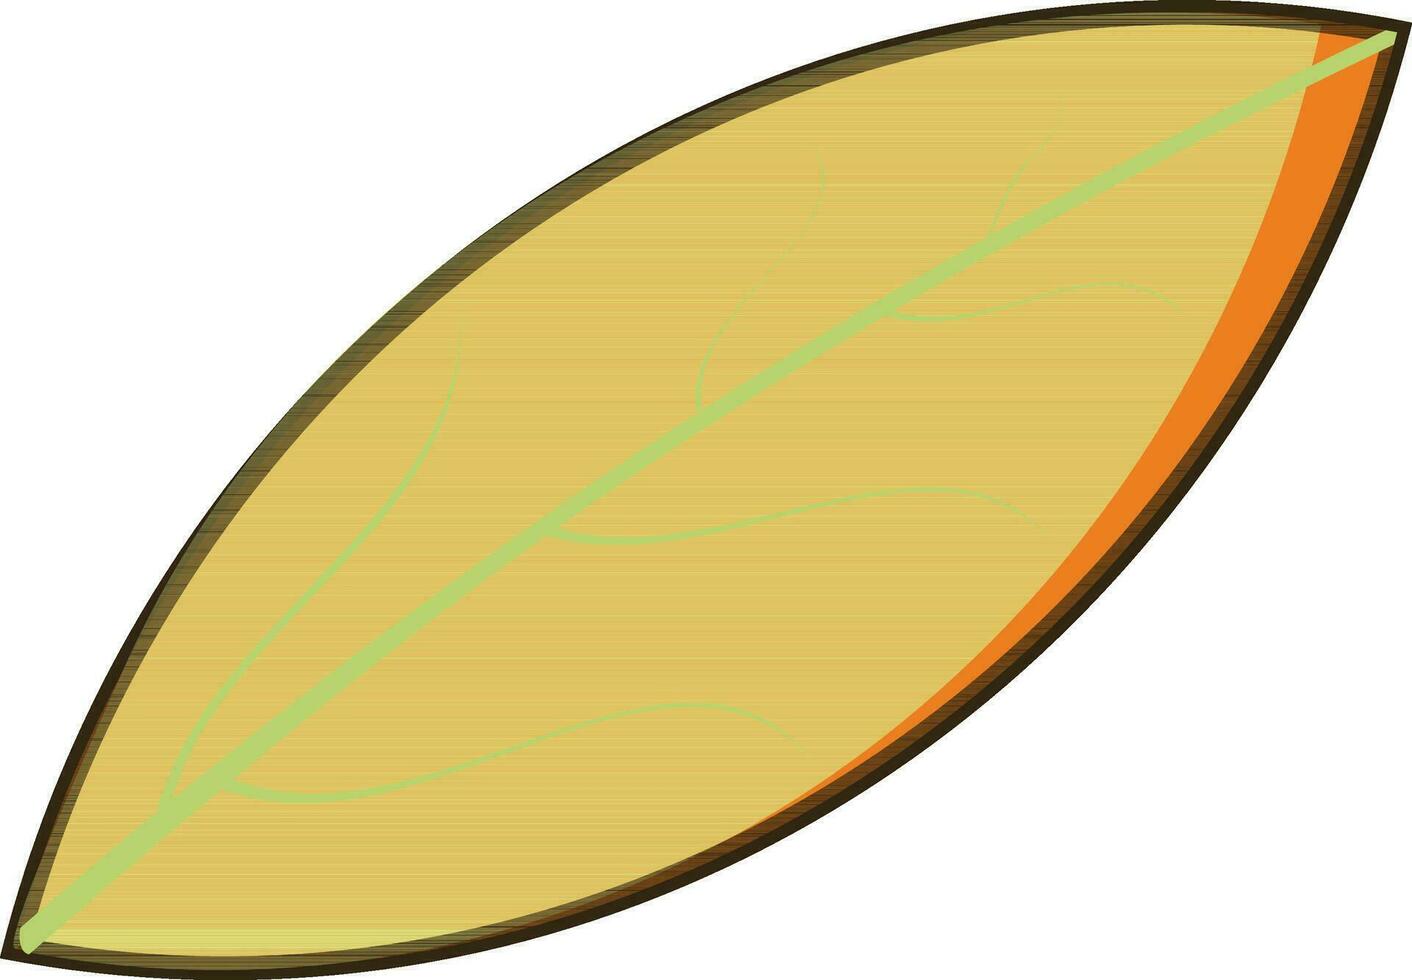 grünes Blatt auf weißem Hintergrund. vektor